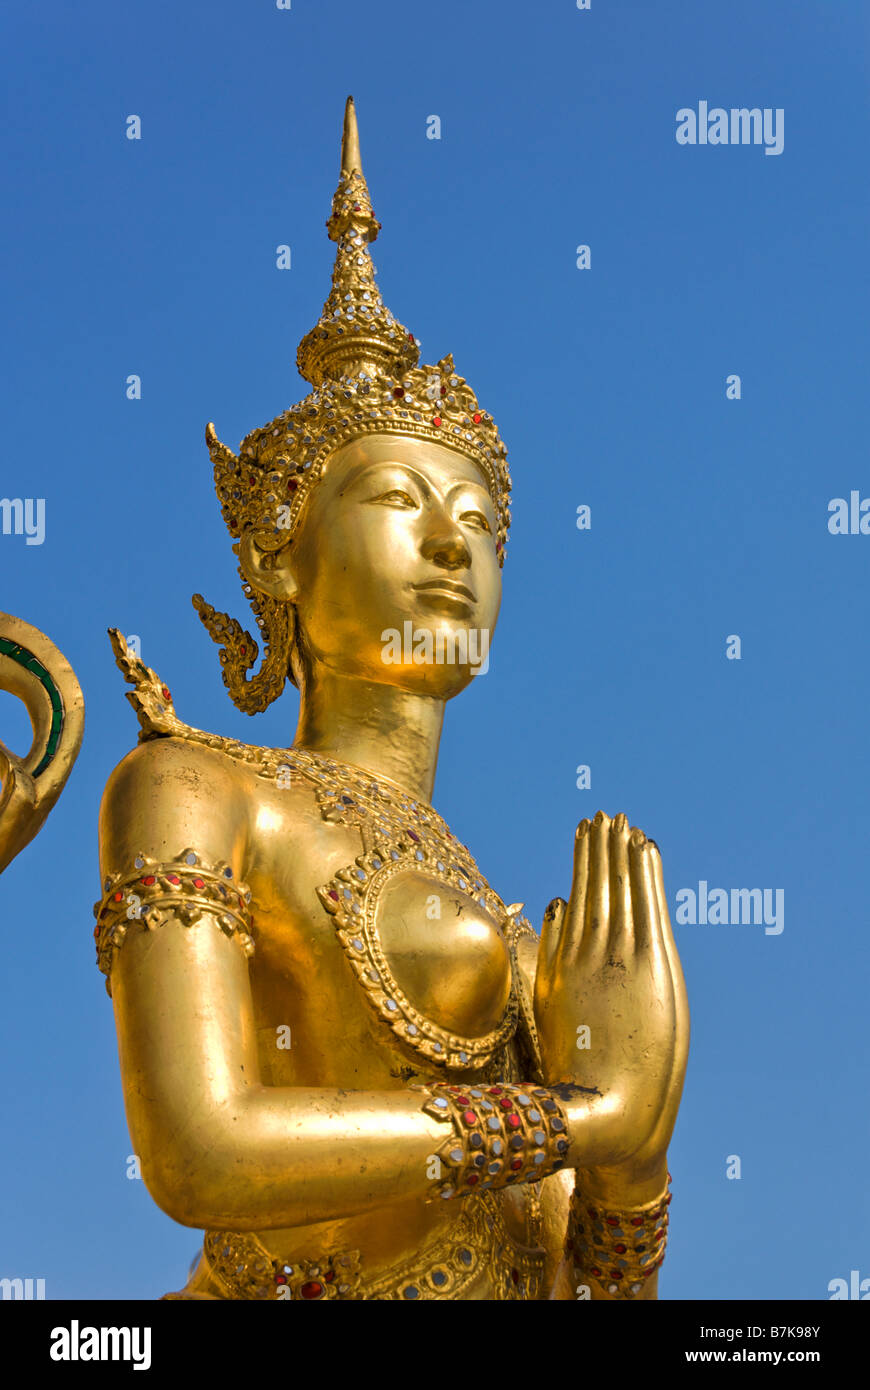 Créature mythologique statue Golden Kinnara - Wat Phra Kaew et le Grand Palais dans le centre de Bangkok en Thaïlande Banque D'Images